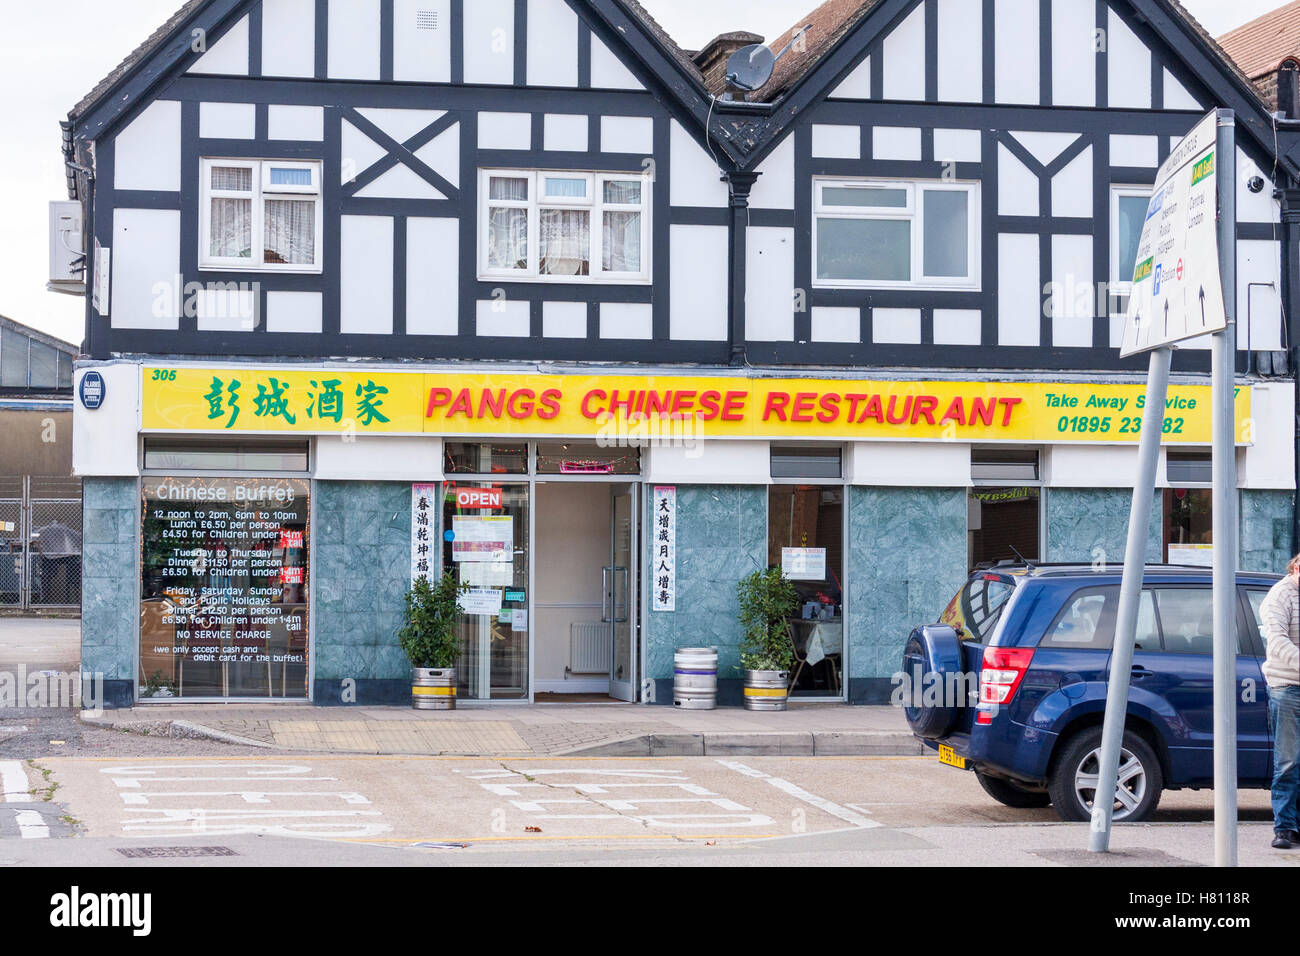 Douleurs - Tout ce que vous pouvez manger restaurant chinois, Hillingdon Circus, Hillingdon, Greater London, UK Banque D'Images